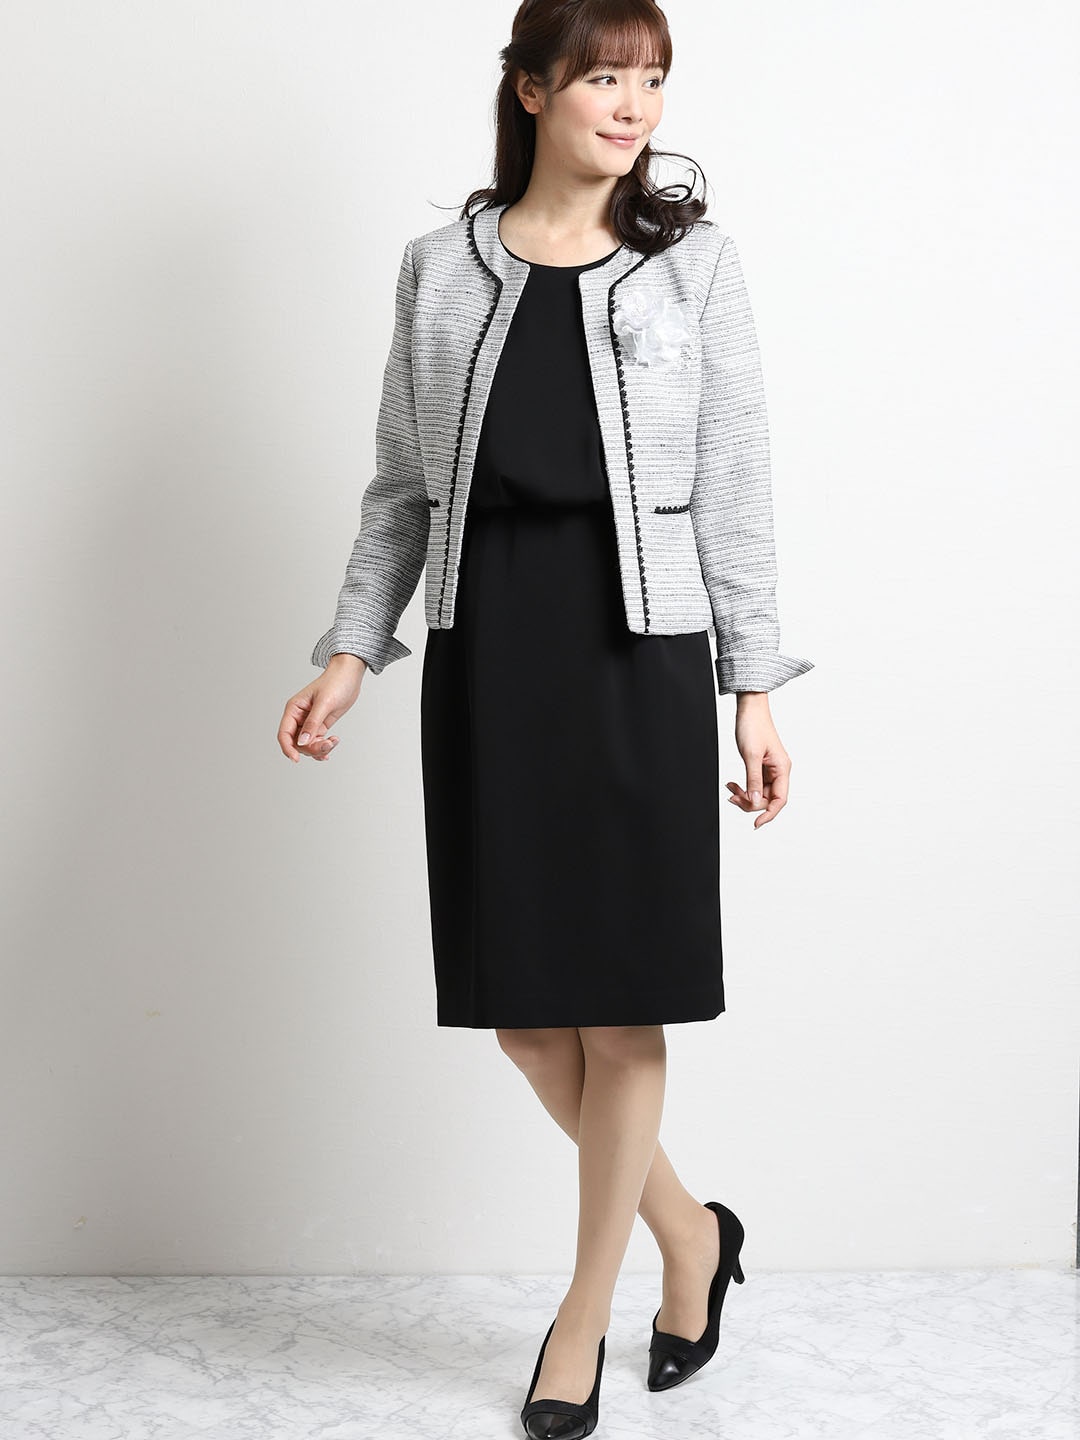 ツイードノーカラージャケット スカート ワンピース 白黒 S 07白黒 スーツ Taka Q Online Shop タカキューオンラインショップ 公式通販